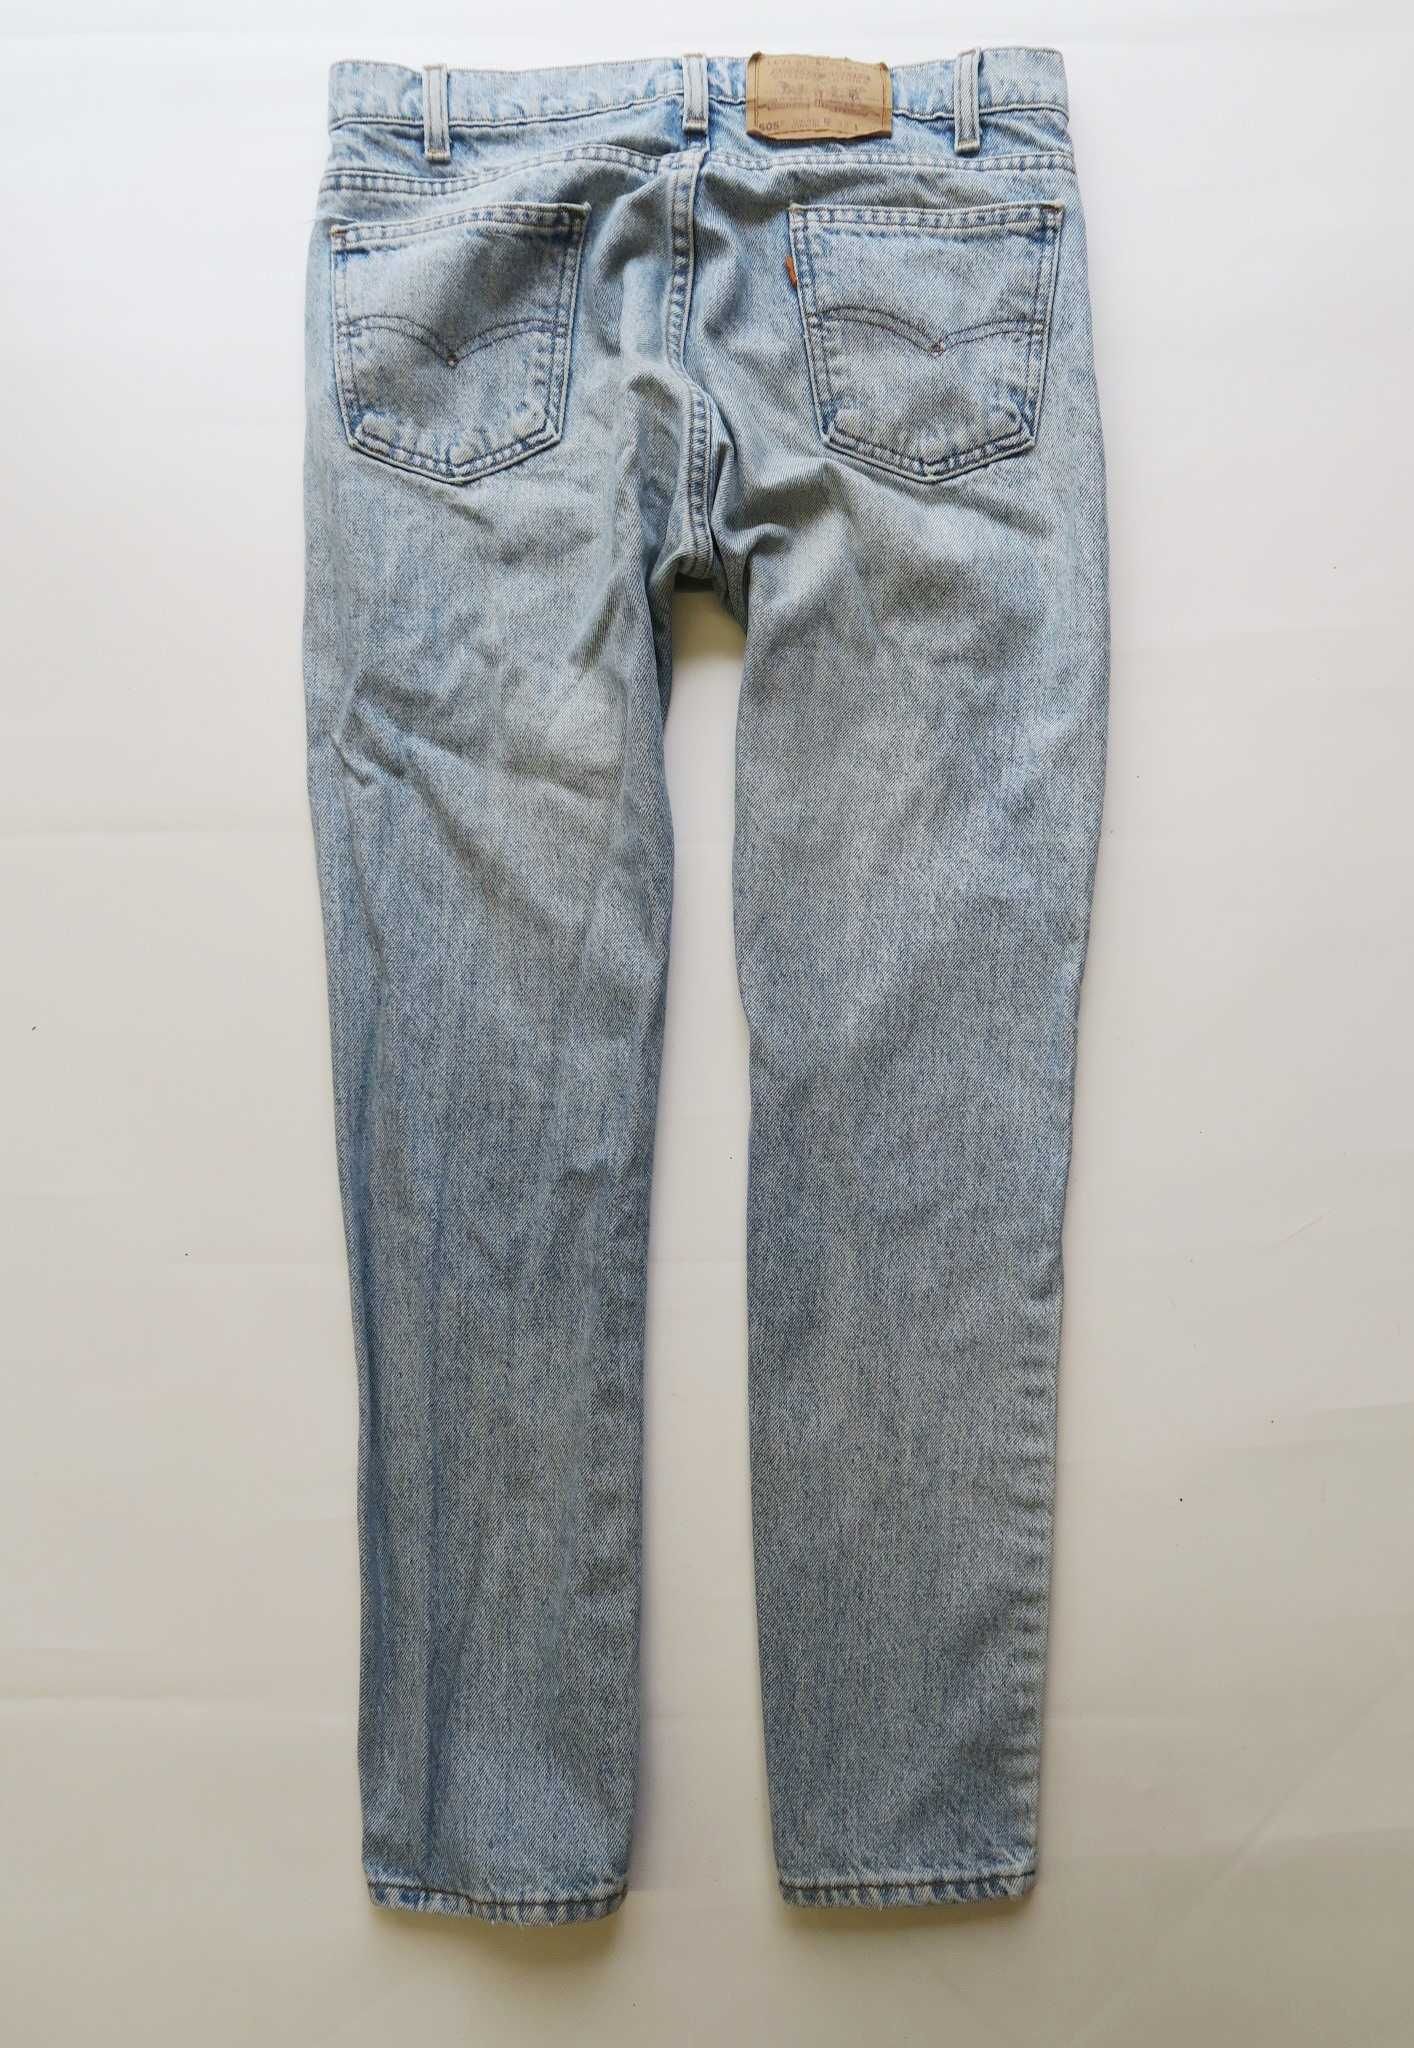 Levi's 505 spodnie jeansowe vintage orange tab 33/30